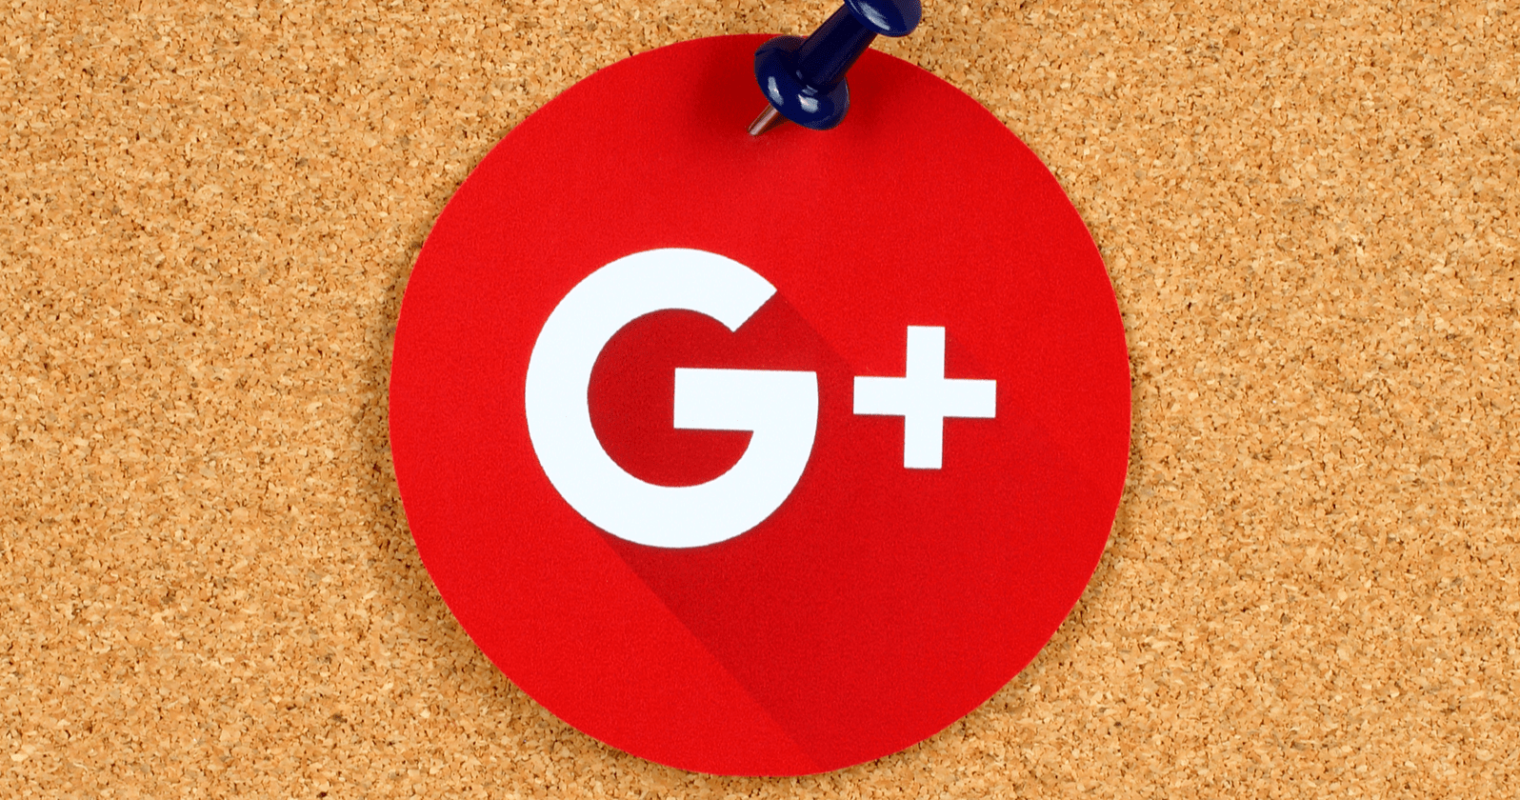 Https plus google. Google+. Гугл плюс соц сеть. Как выглядел Google+. Утечка гугл.